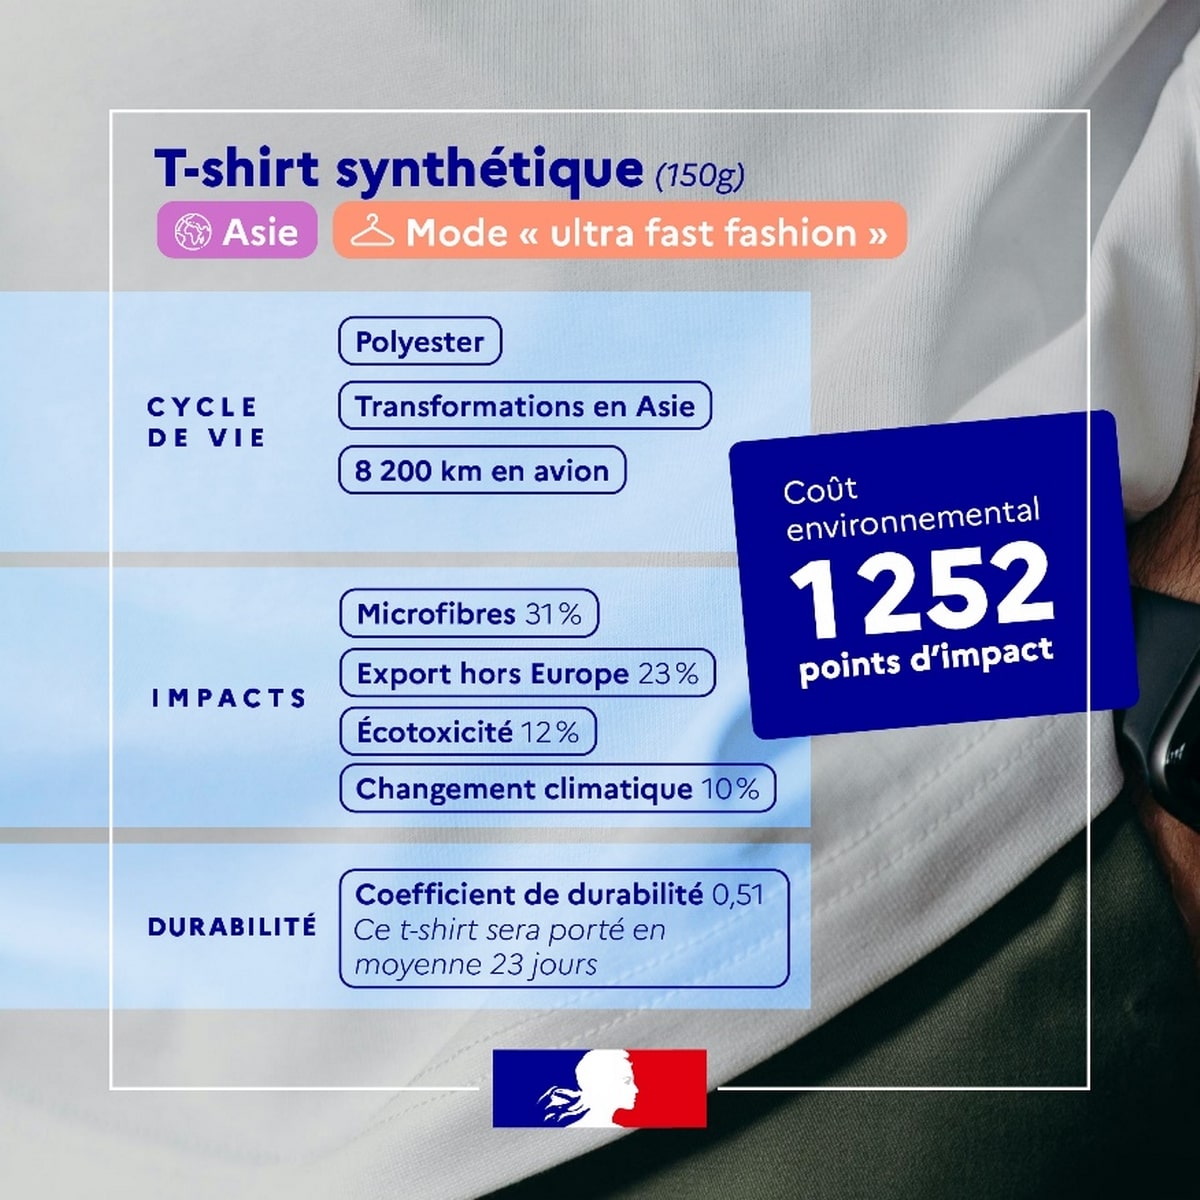 Le coût environnemental d'un t-shirt synthétique de 150 g fabriqué en Asie pour une mode « ultra fast fashion » est de 1 252 points d'impact